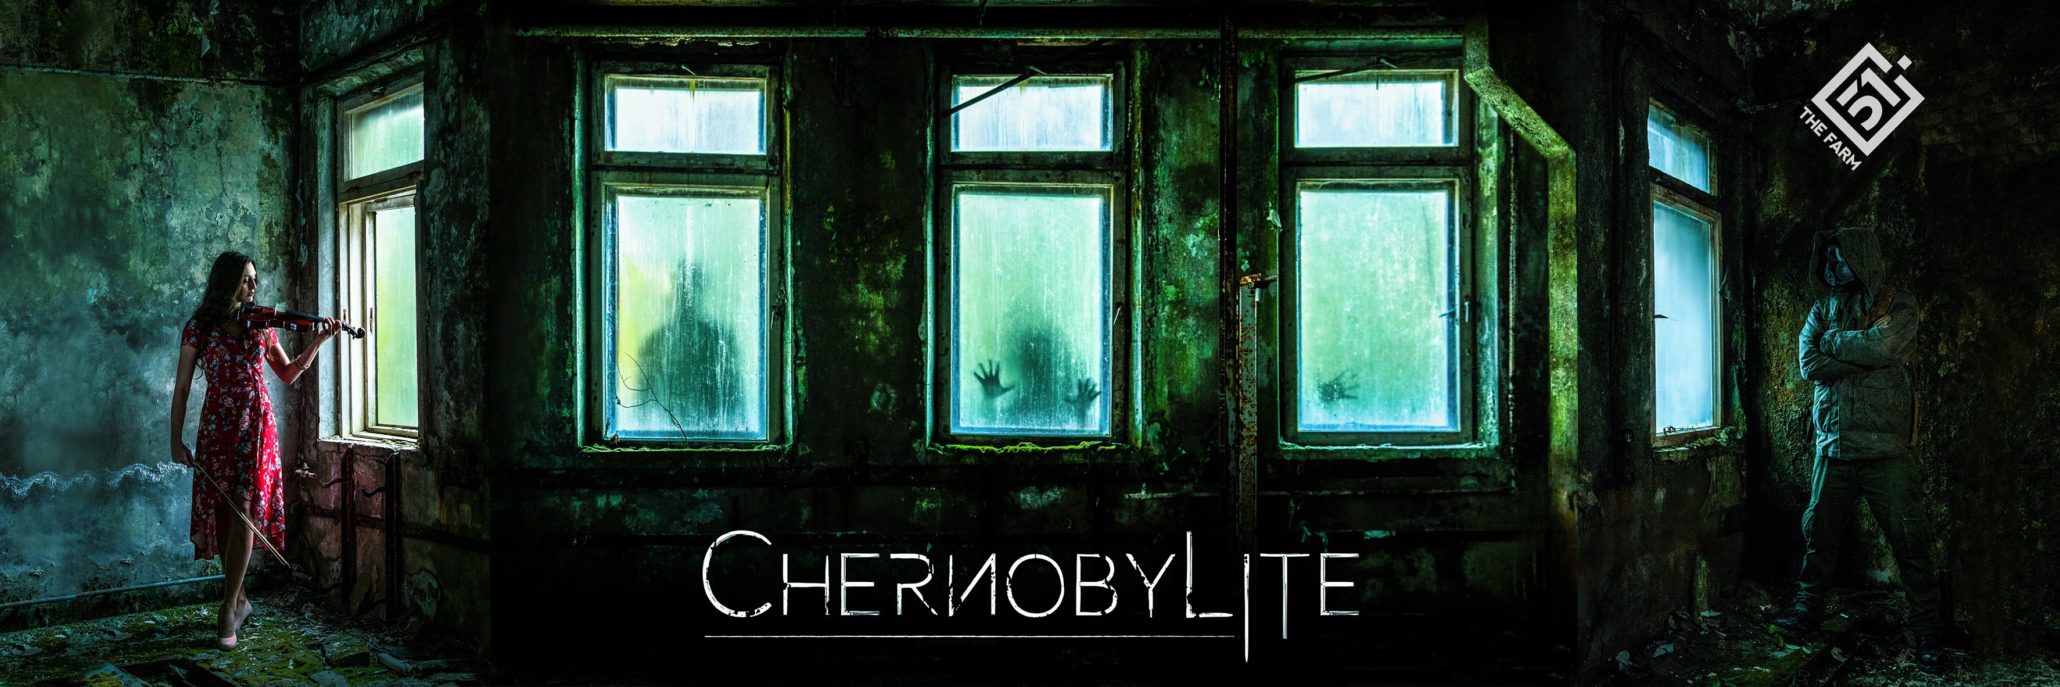 The Farm 51 presenta el primer teaser tráiler de Chernobylite, survival horror de ciencia ficción